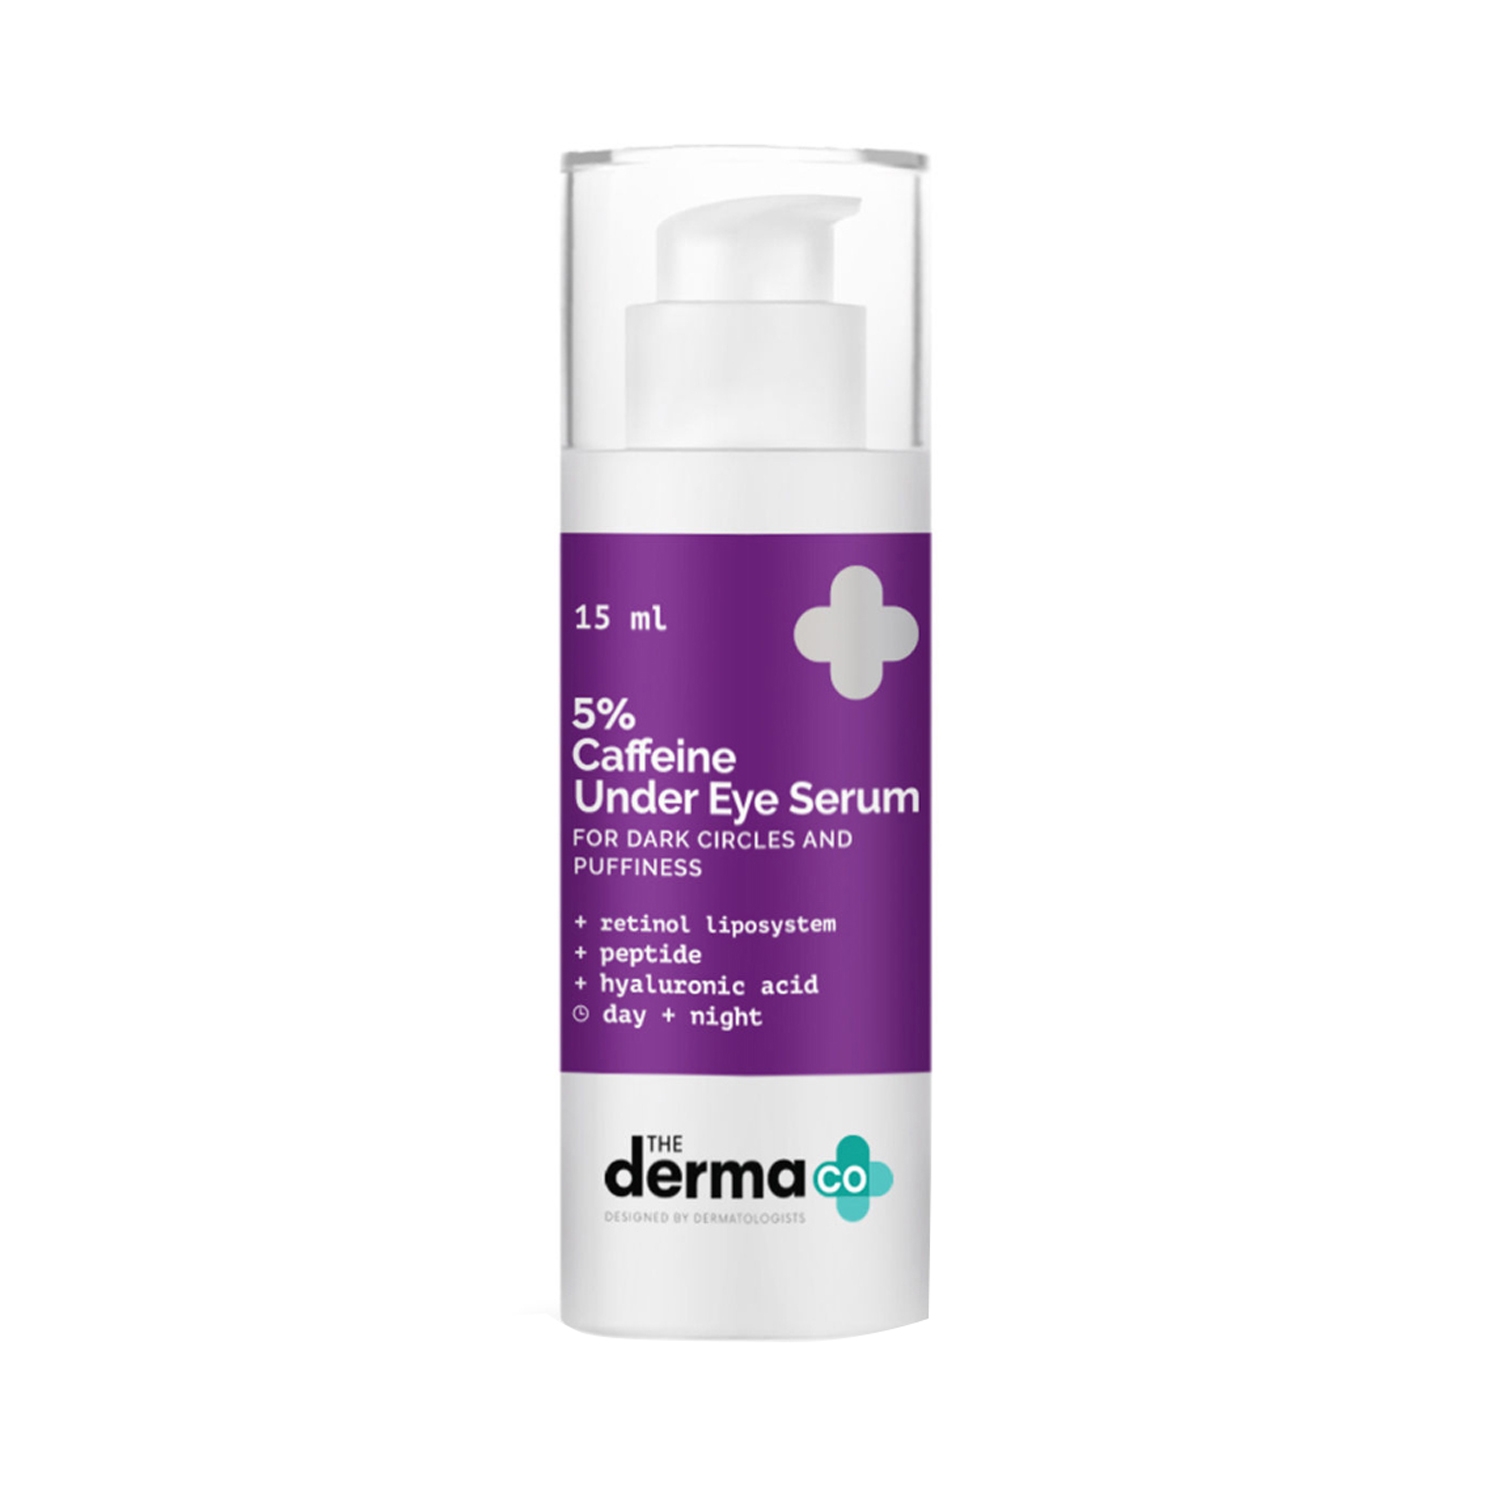 The Derma Co | The Derma Co 5% Caffeine Under Eye Serum (15ml)